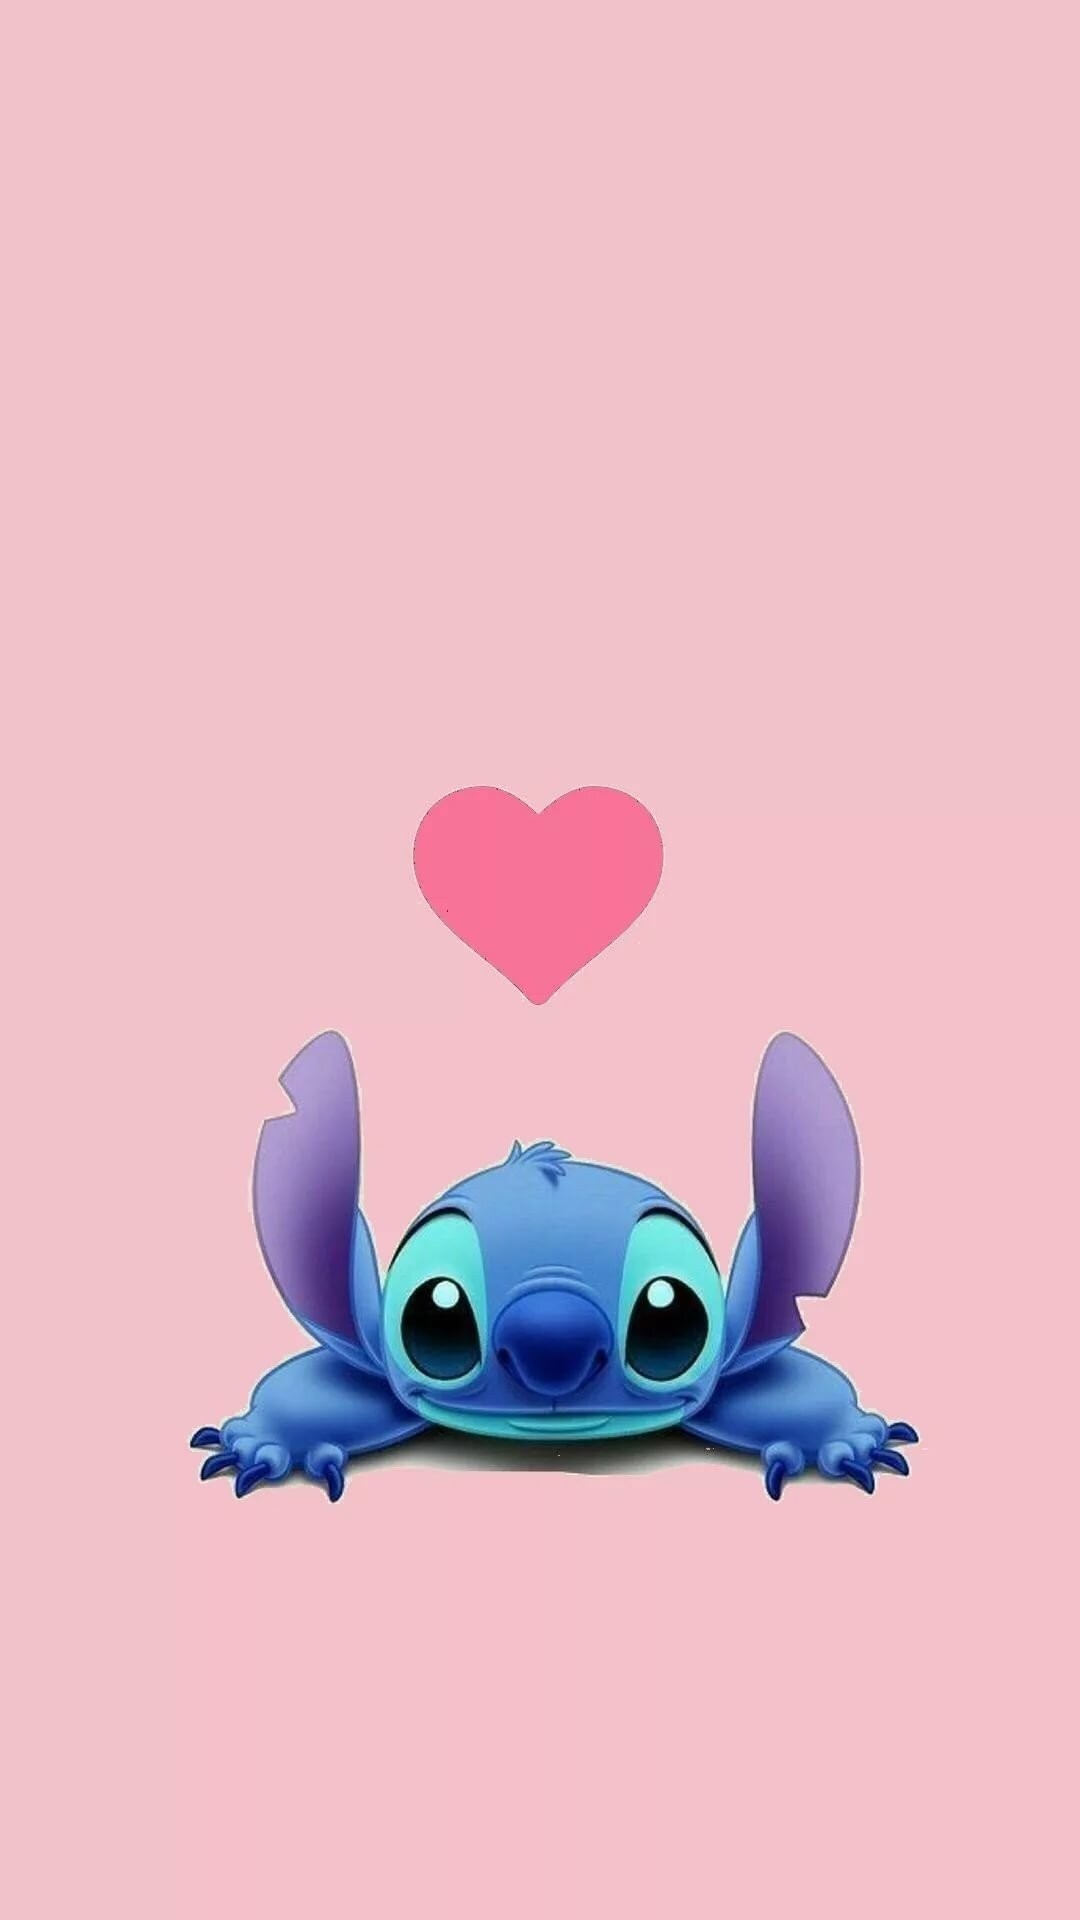 Cute Disney phone wallpaper